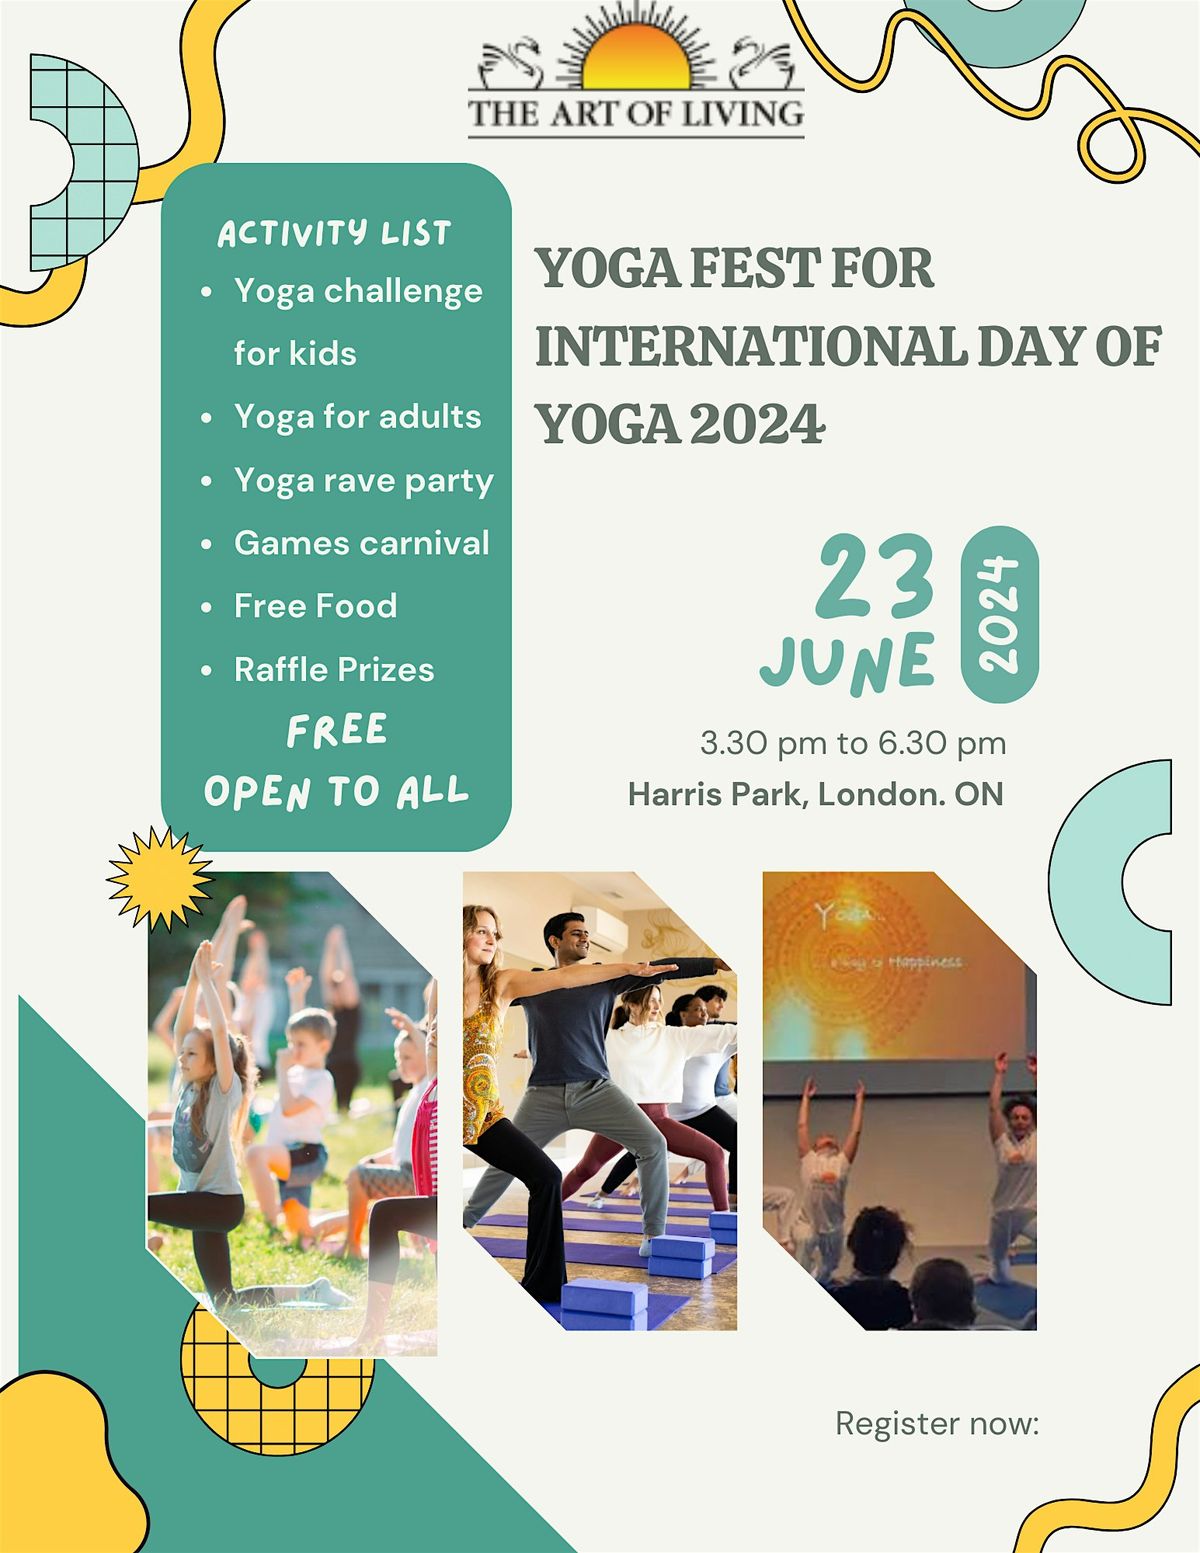 Yoga Fest for International Day of Yoga 2024